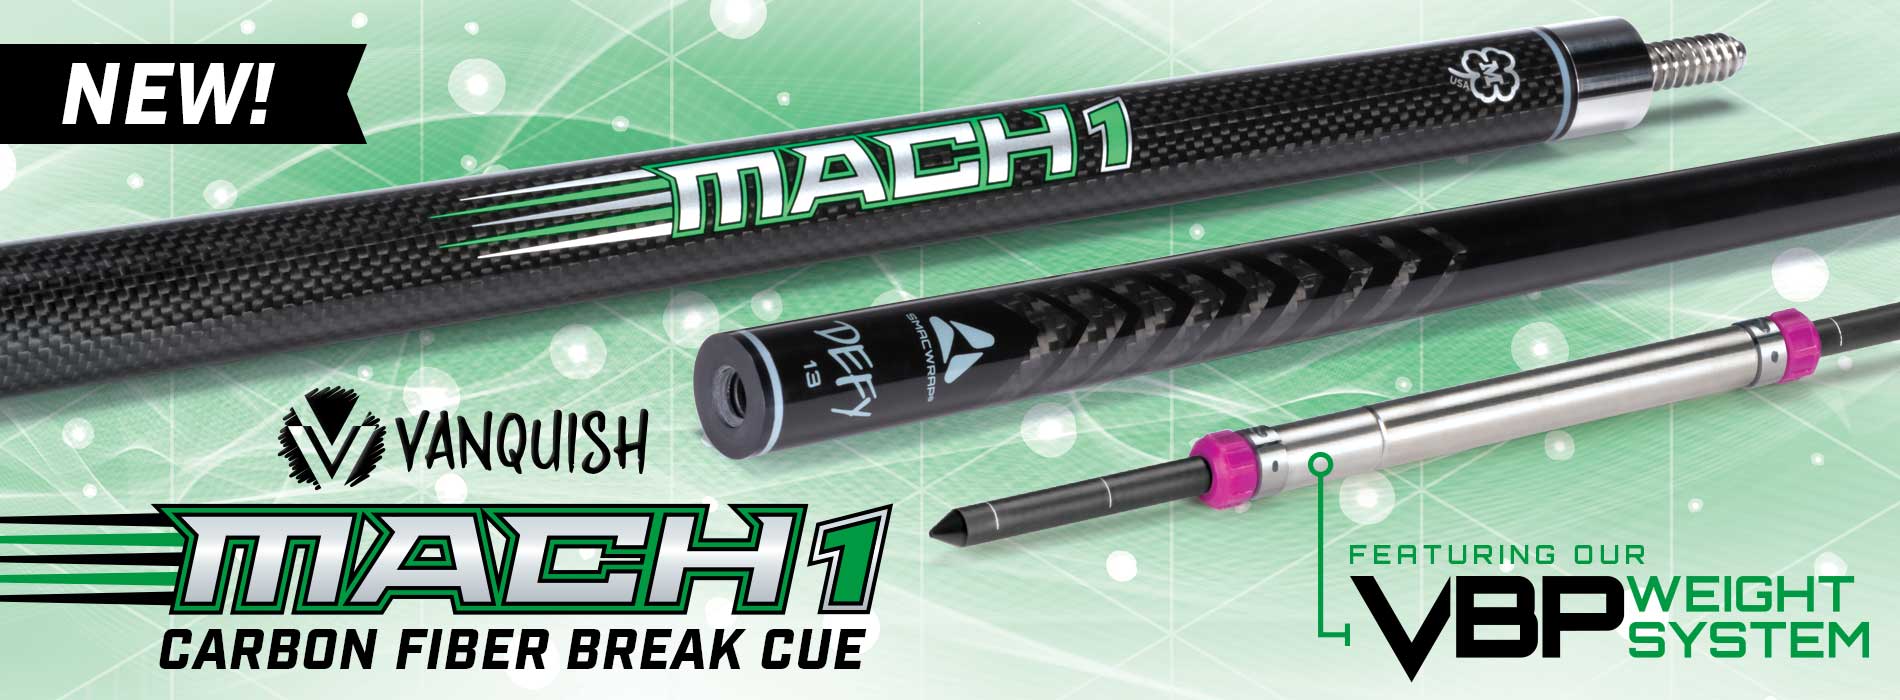 Vanquish Mach 1 Carbon Fiber Break Cue